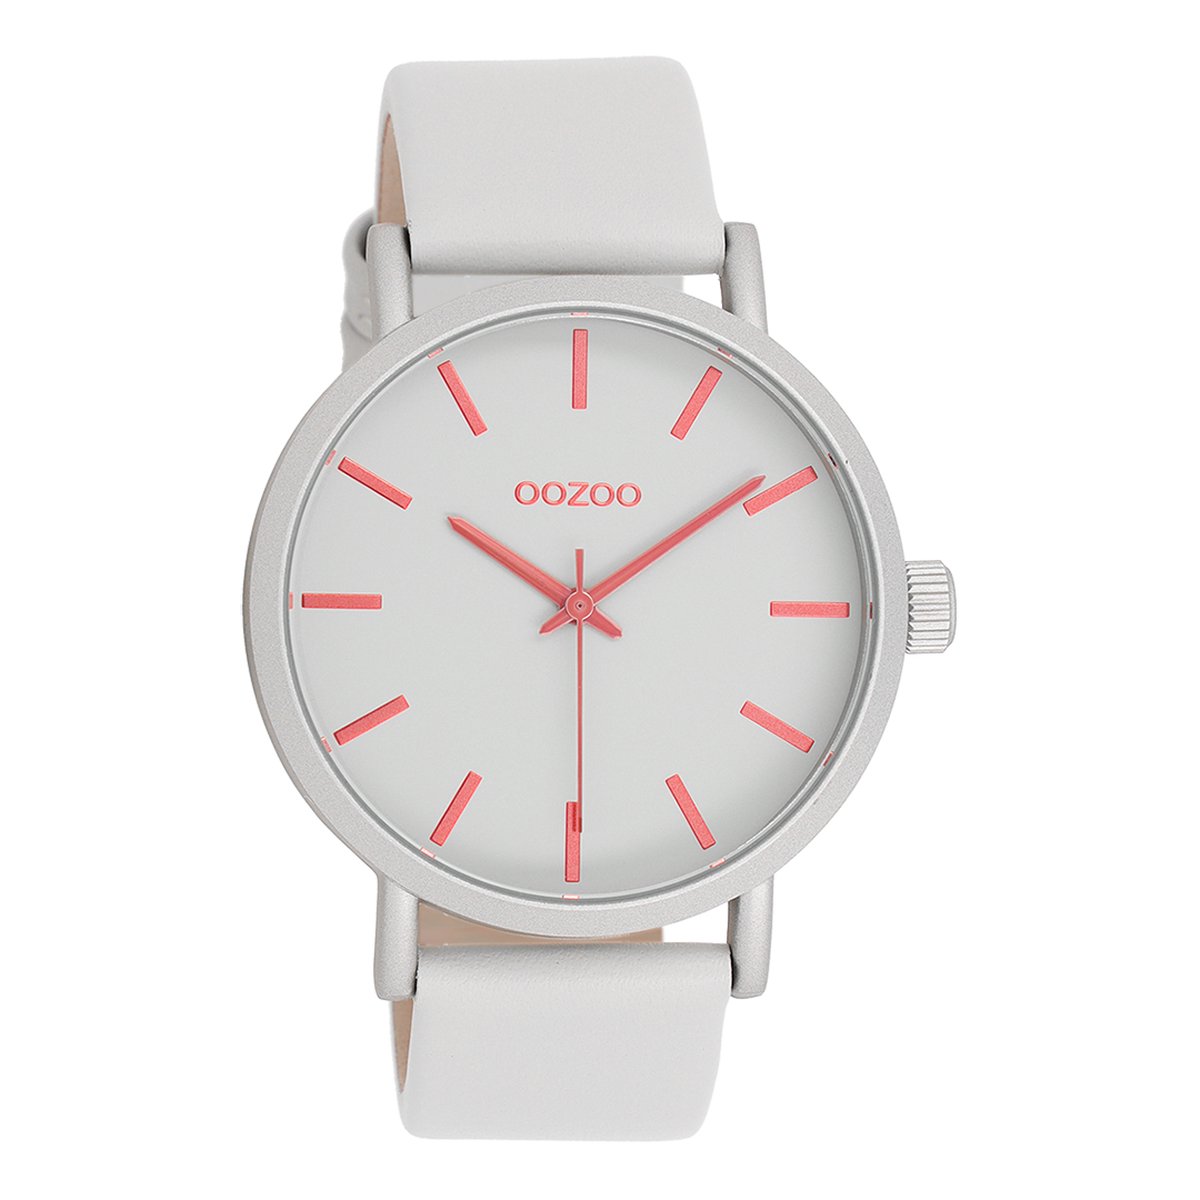 OOZOO Timepieces - Licht grijze OOZOO horloge met licht grijze leren band - C11180